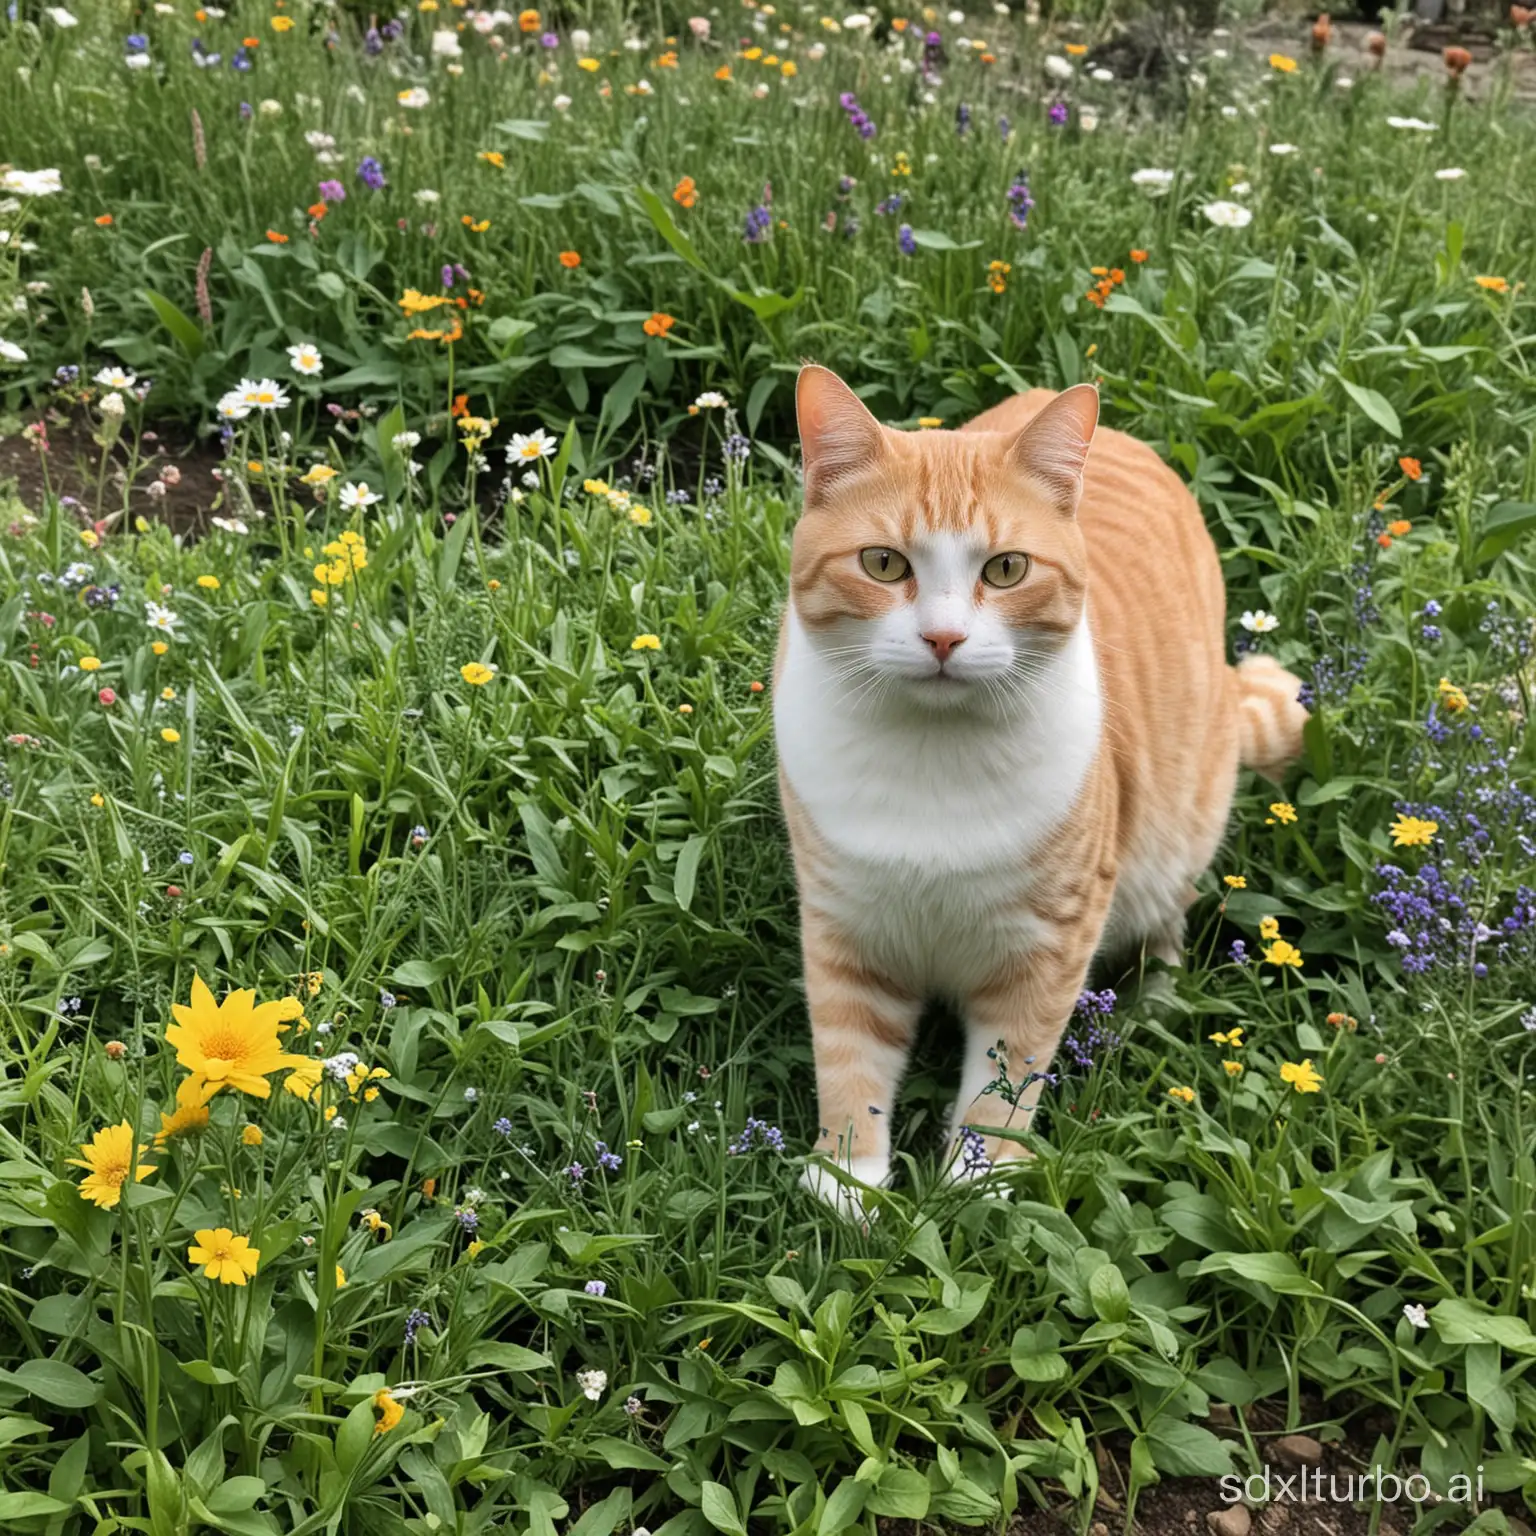 The happy cat in the garden.